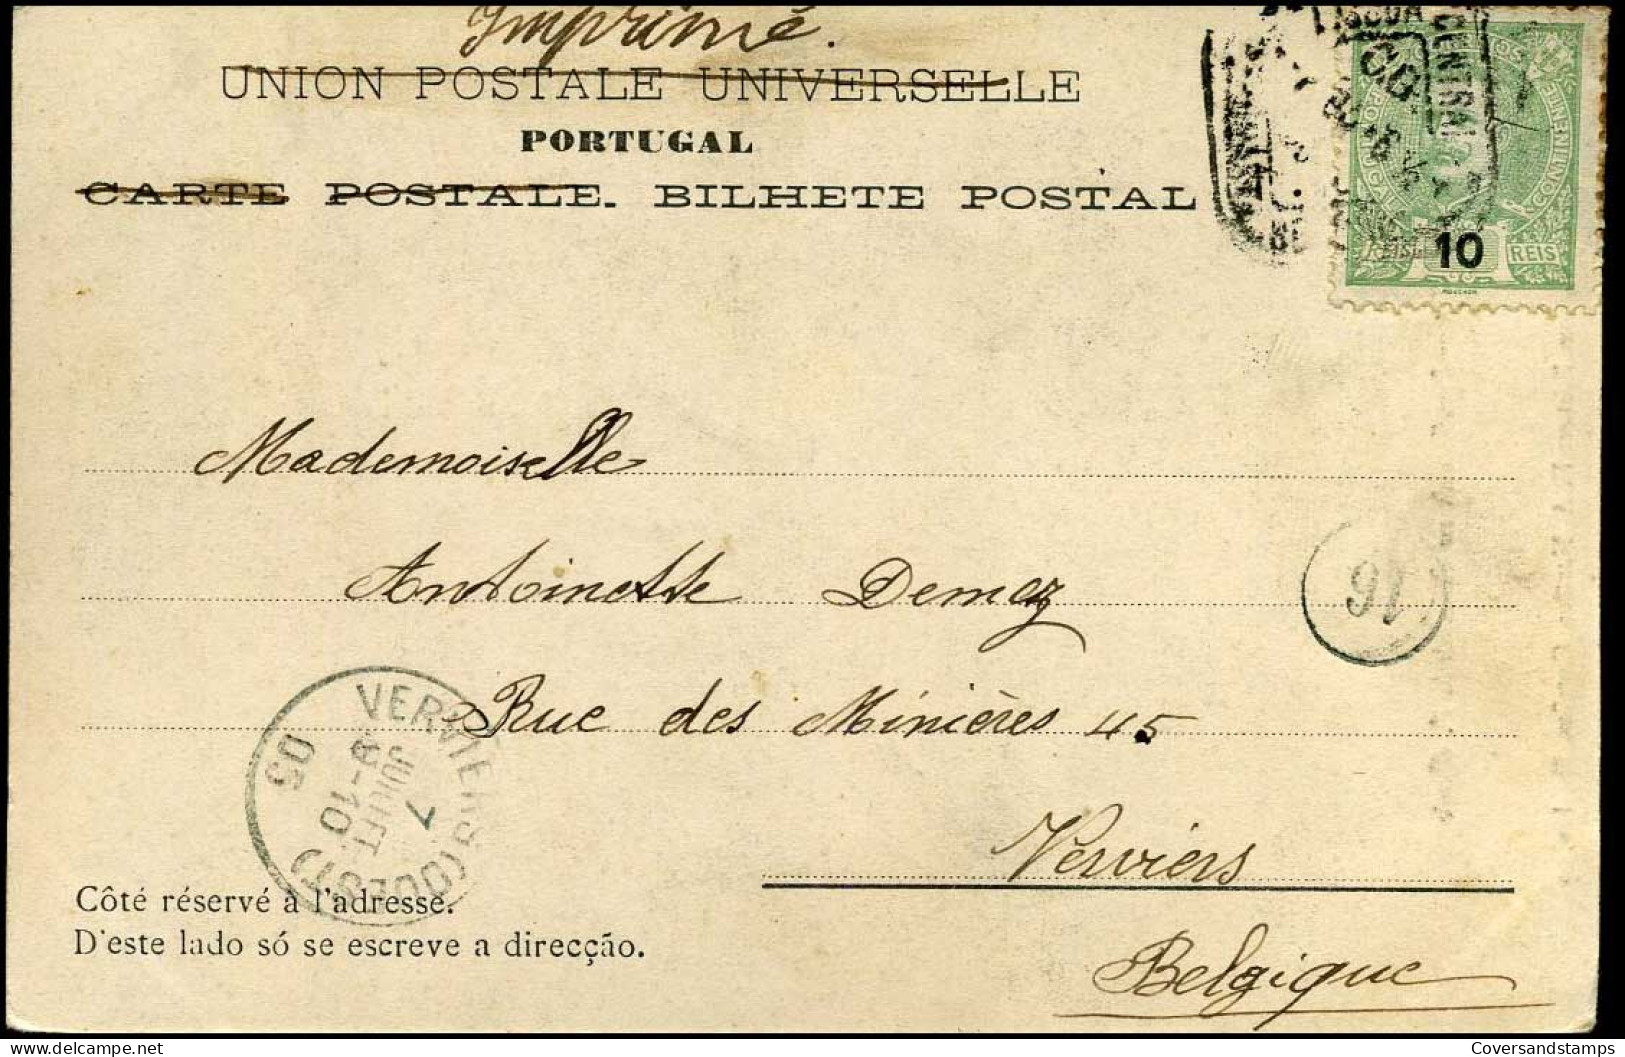 Bilhete Postal : De Lisboa à Verviers, Belgique -- 1905 - Postal Stationery